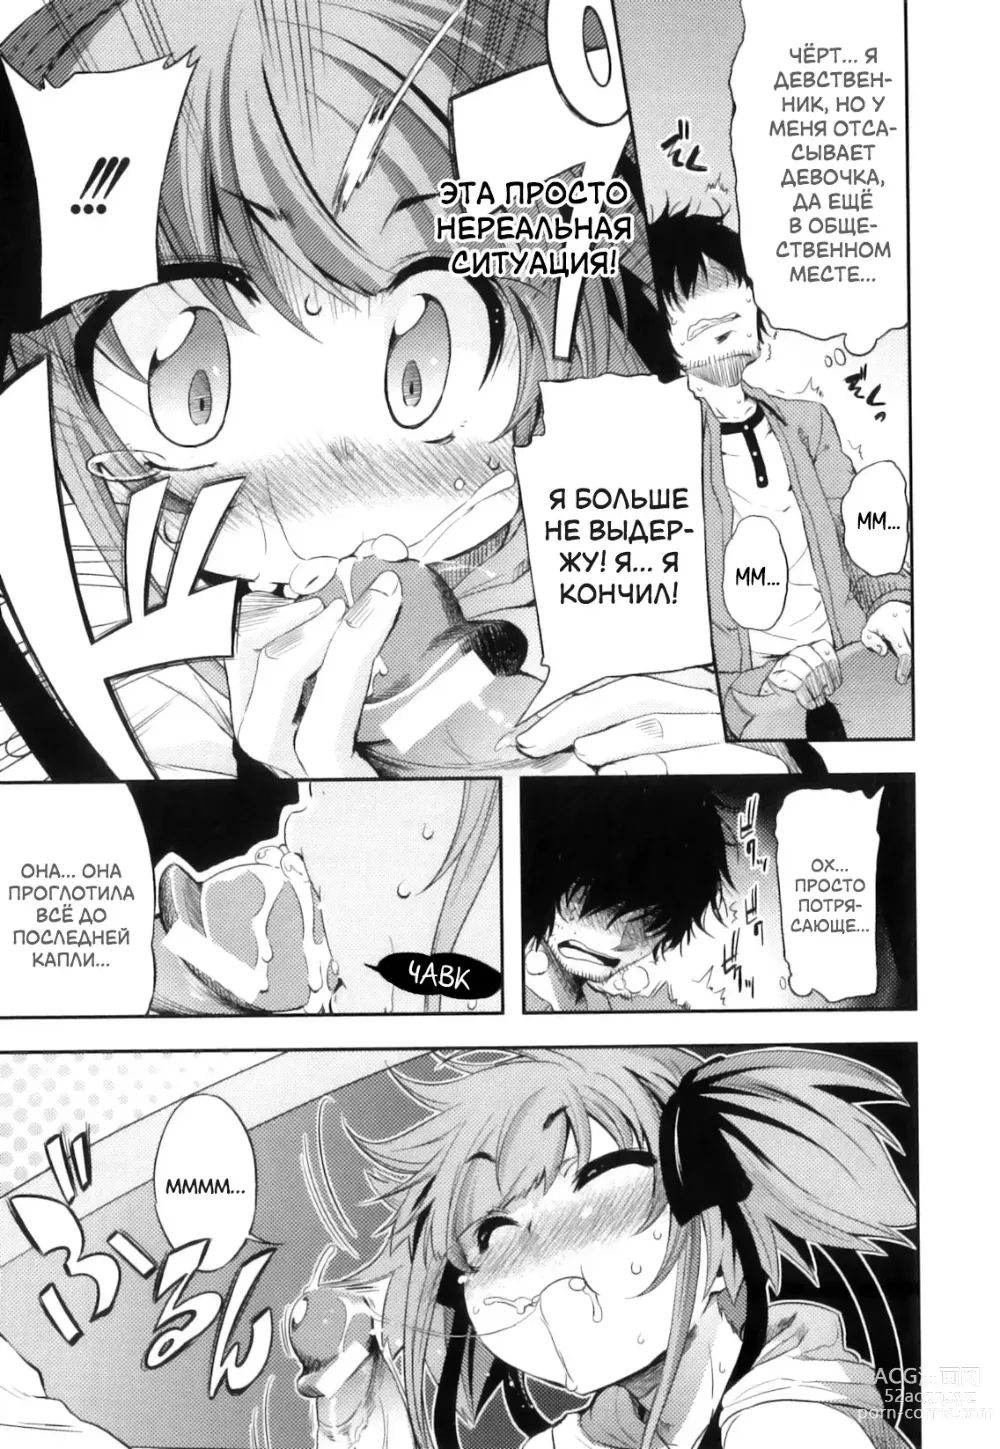 Page 11 of manga Это просто нереально!